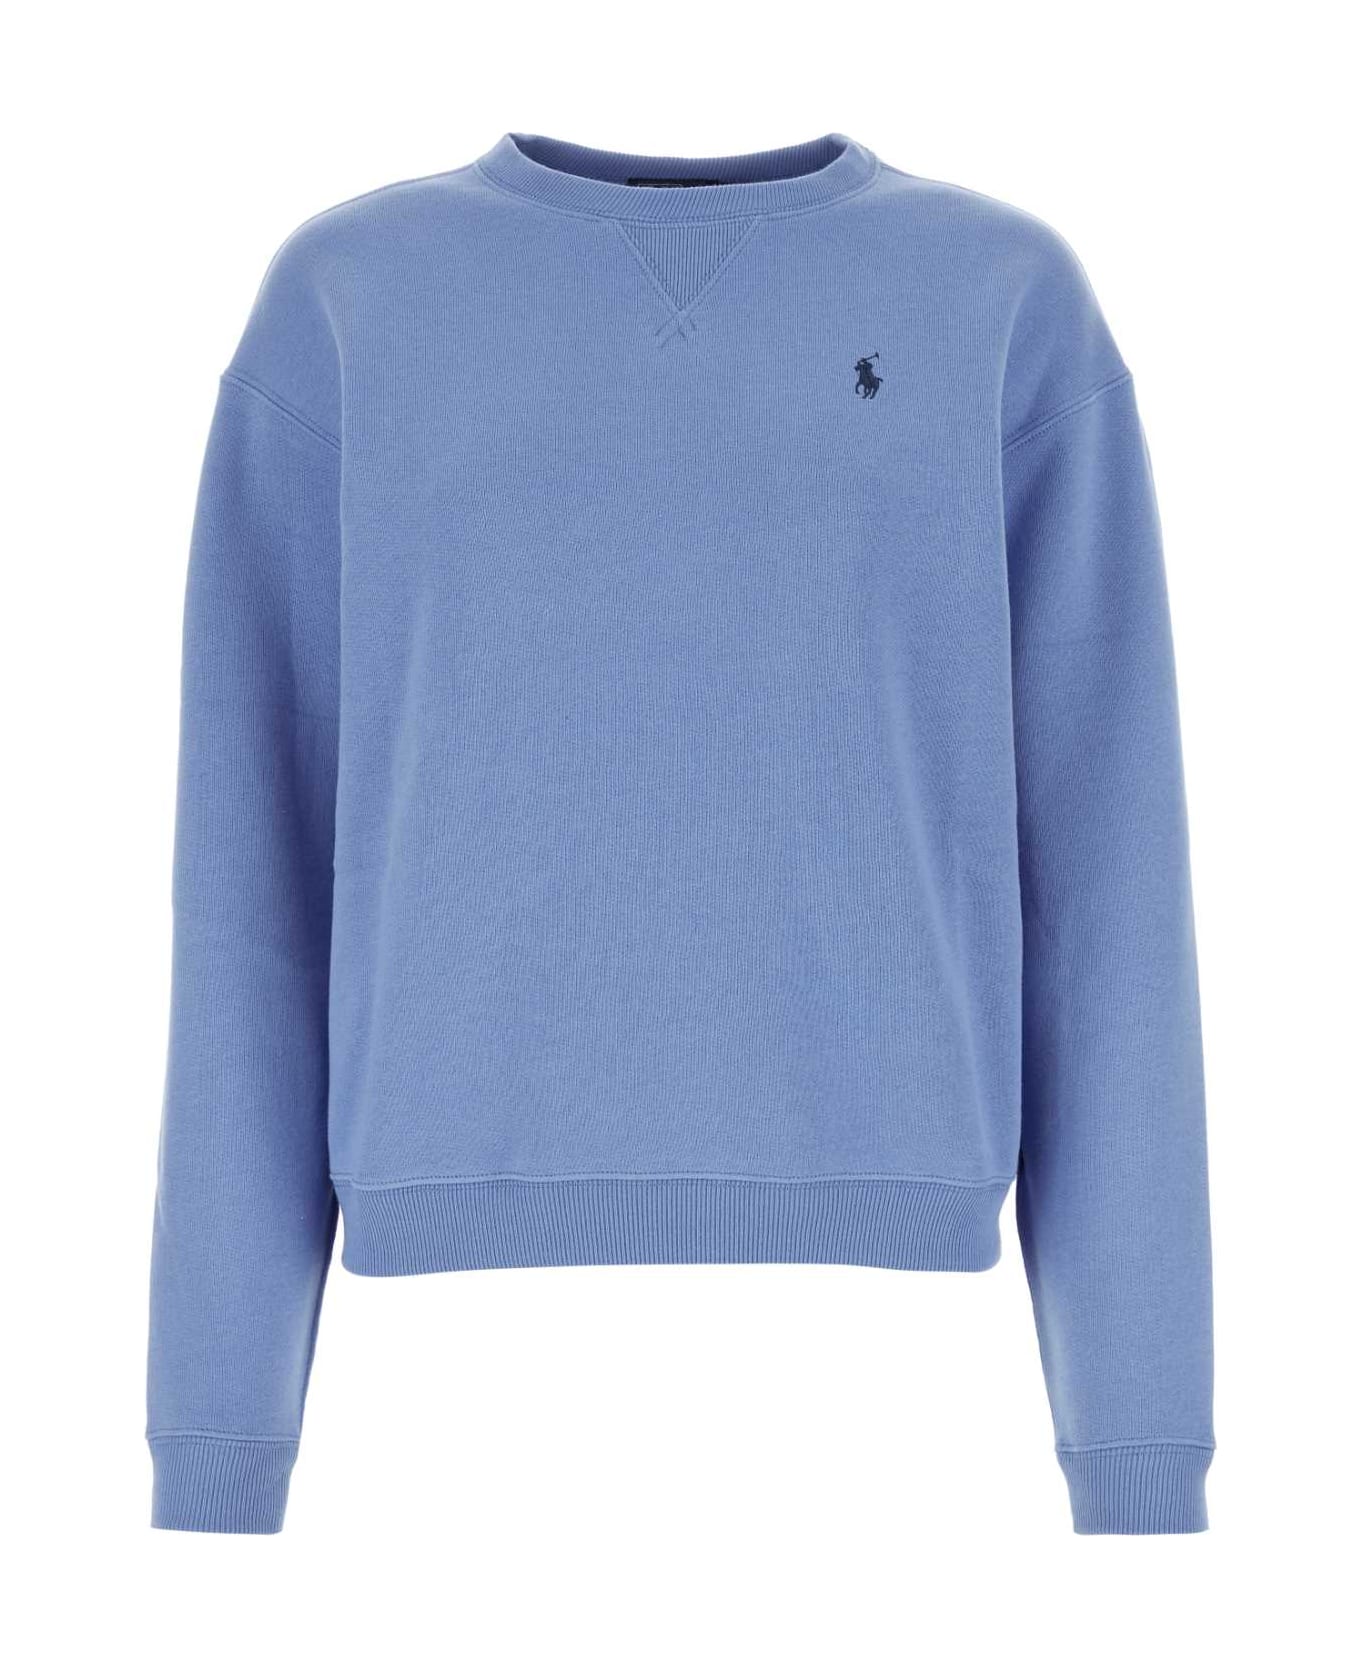 Polo Ralph Lauren Cerulean Blue Cotton Blend Sweatshirt - SUMMERBLUE フリース